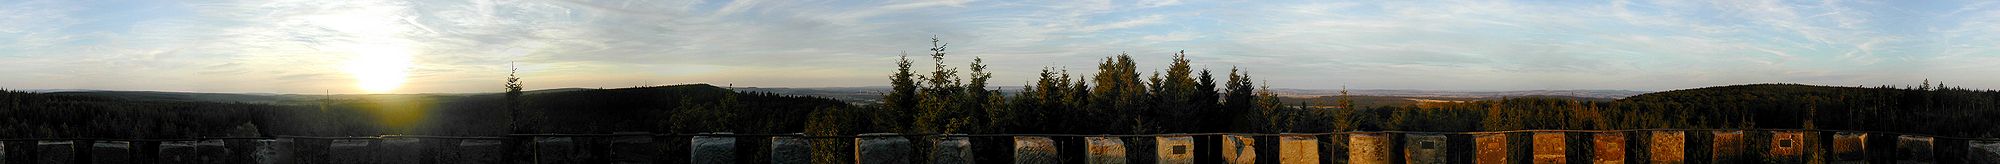 360°-Panorama von Bierbaums Nagel